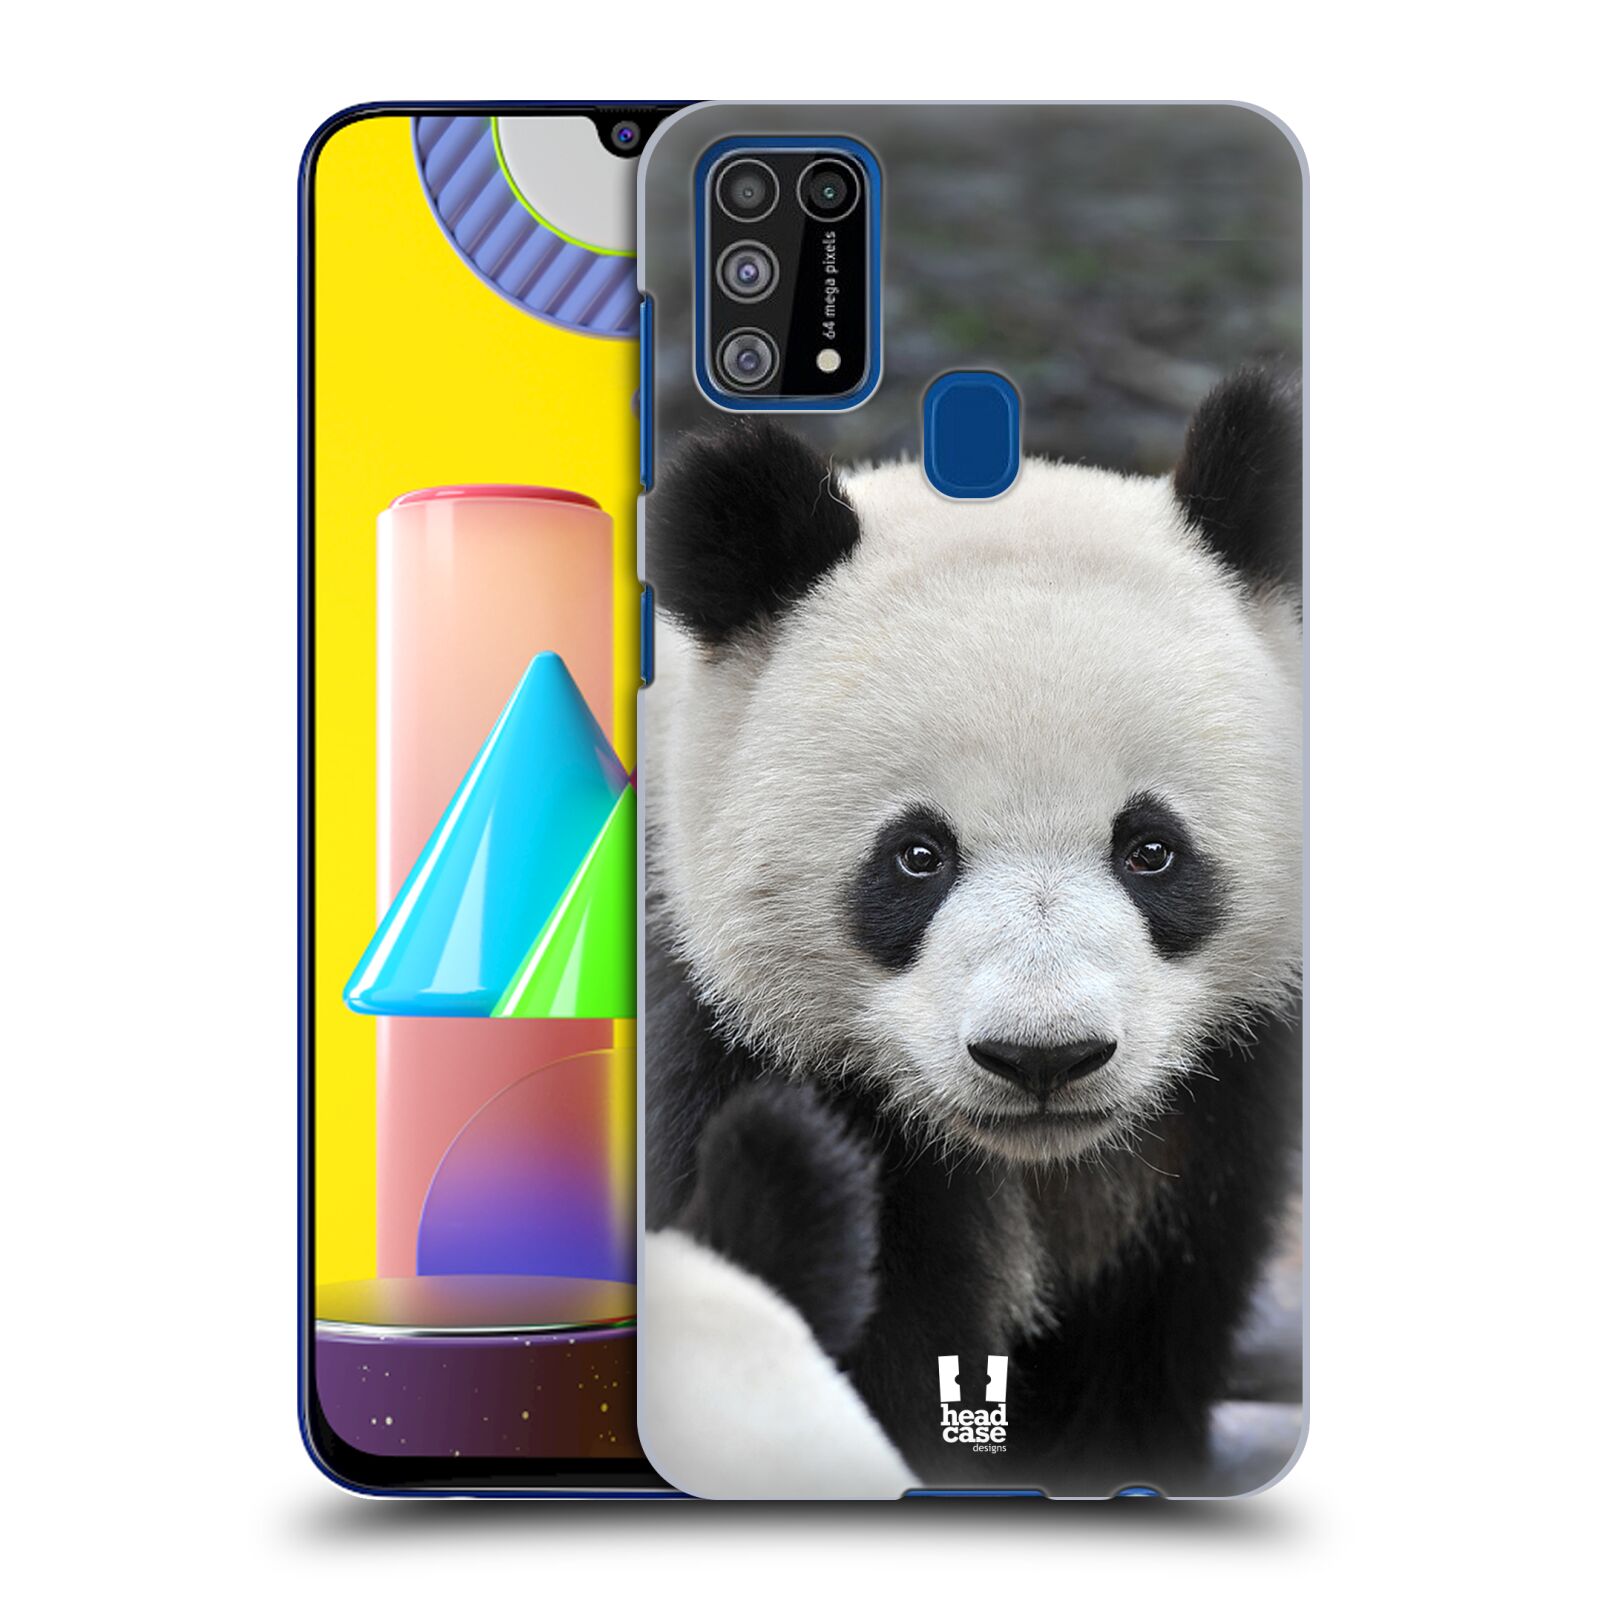 Zadní obal pro mobil Samsung Galaxy M31 - HEAD CASE - Svět zvířat medvěd panda